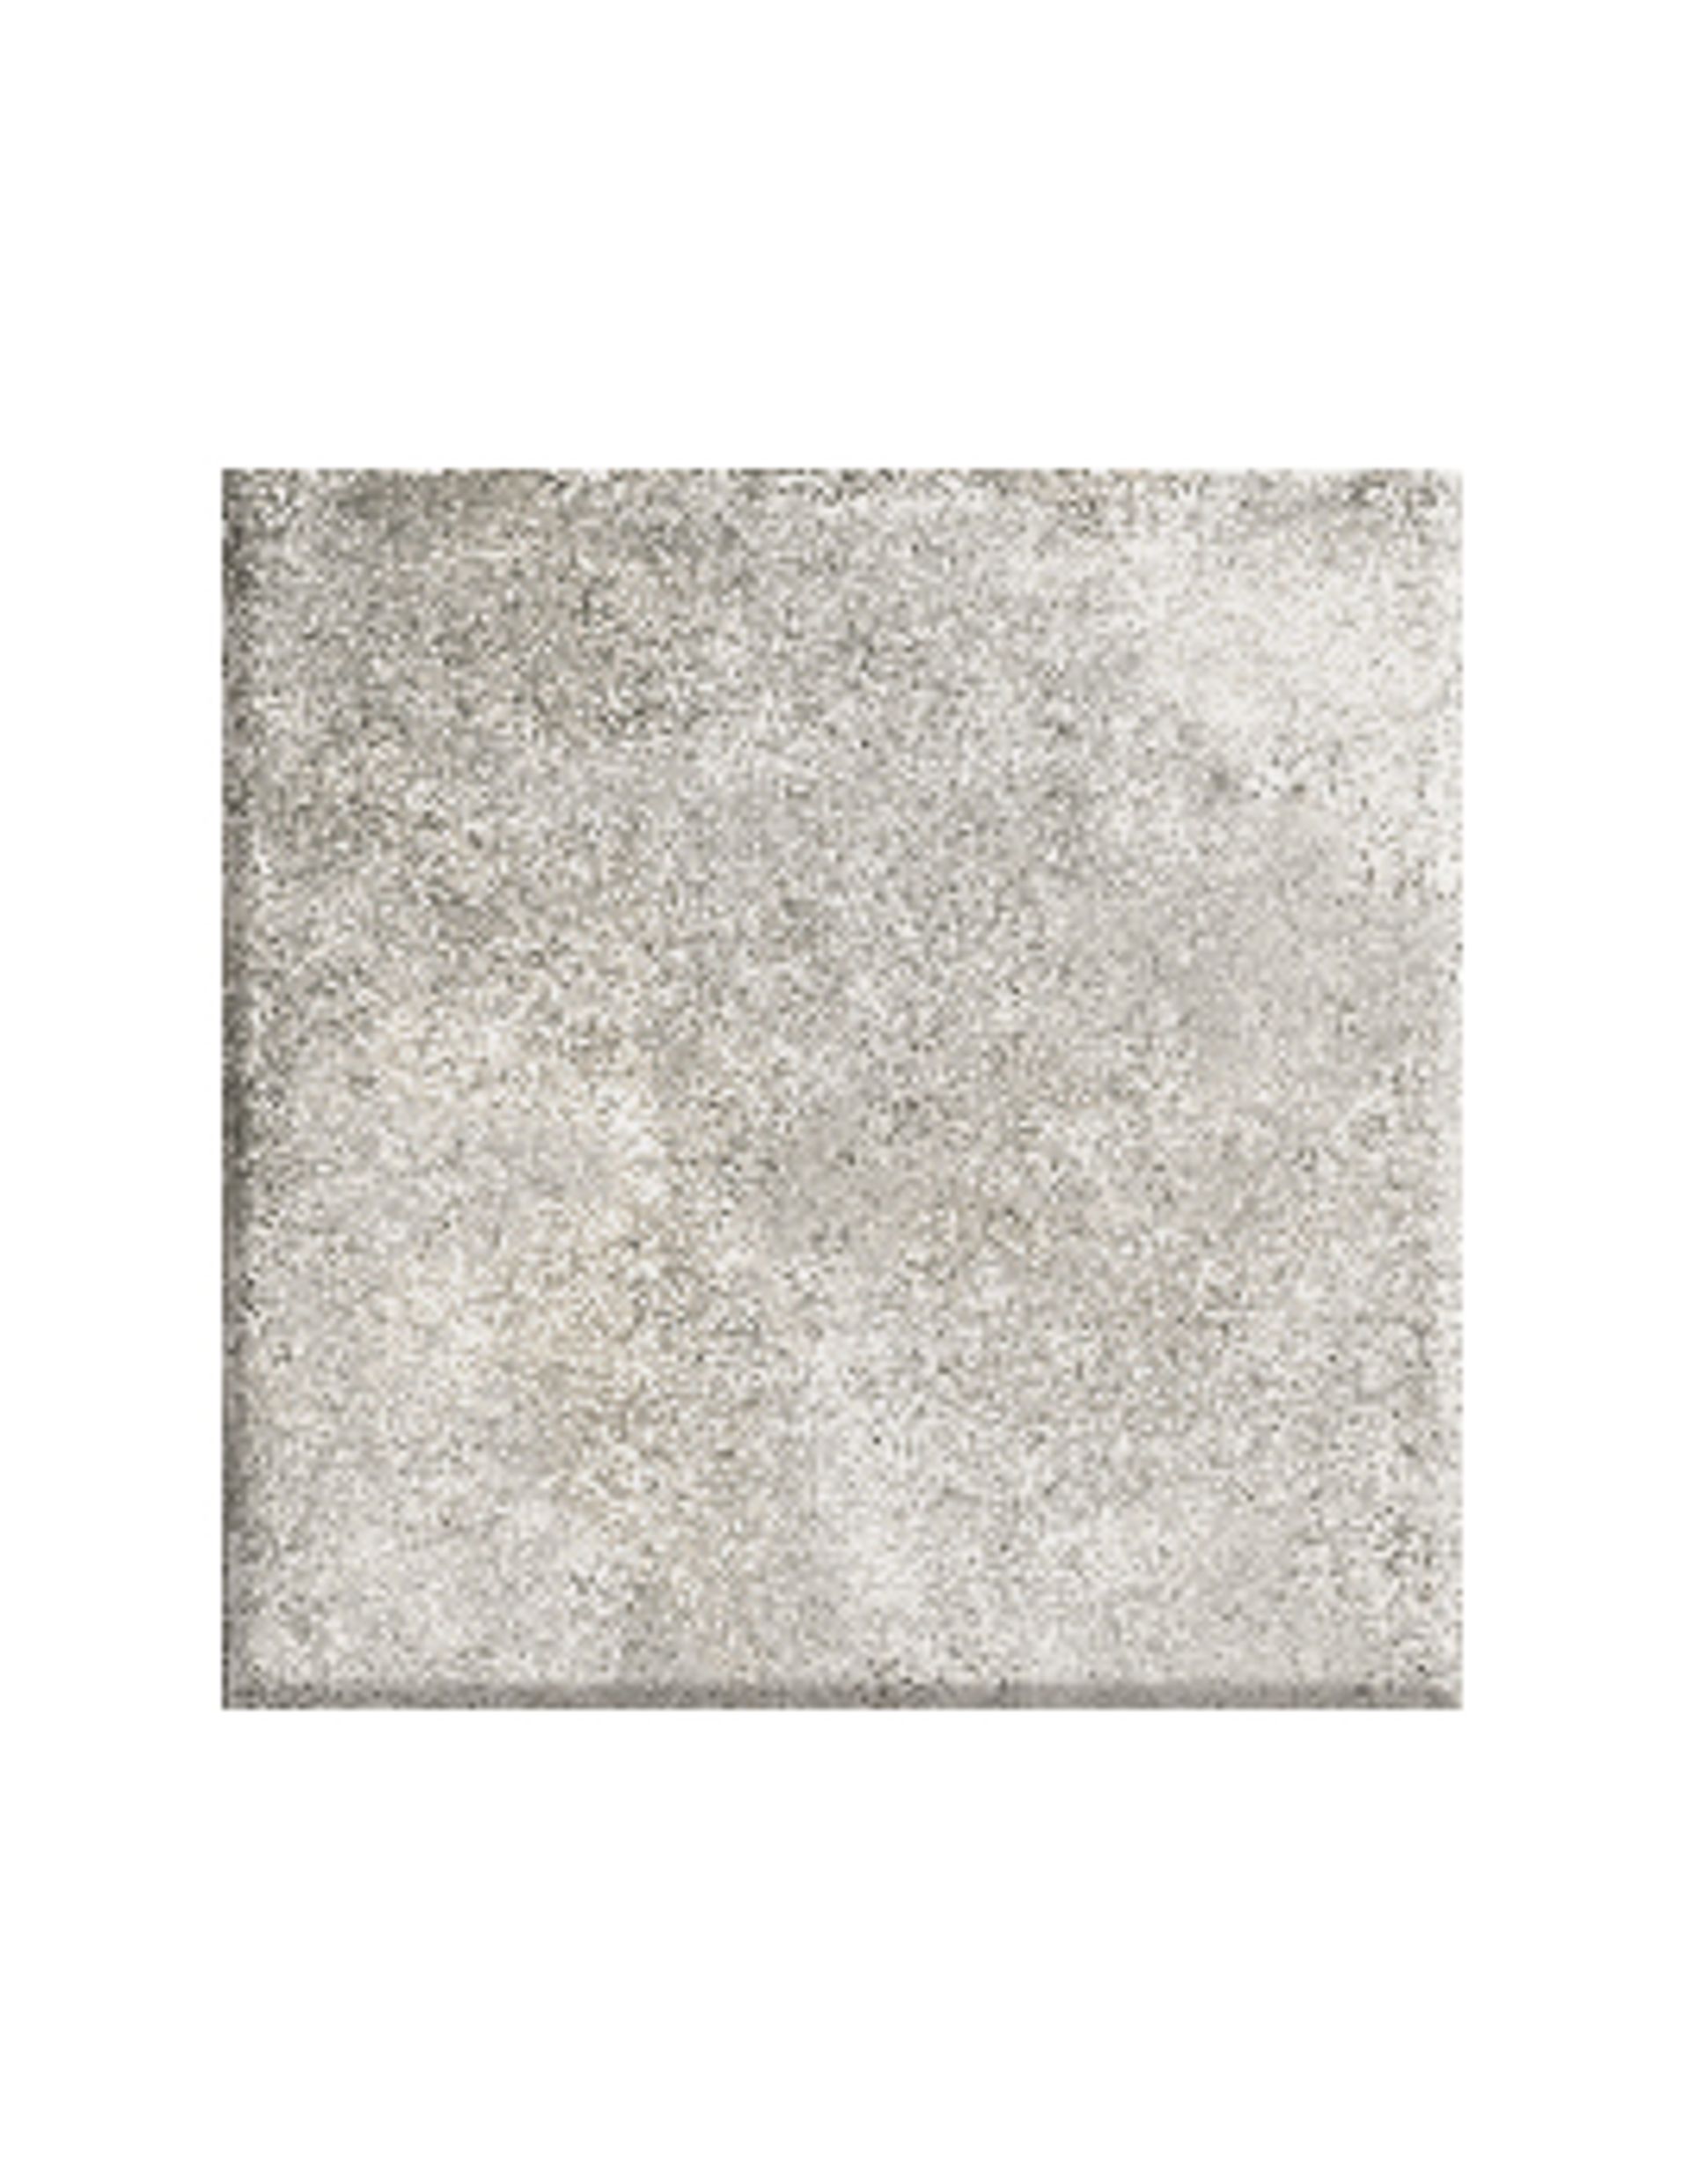 Carrelage NATURE LISSE, aspect pierre gris, dim 30.00 x 30.00 cm